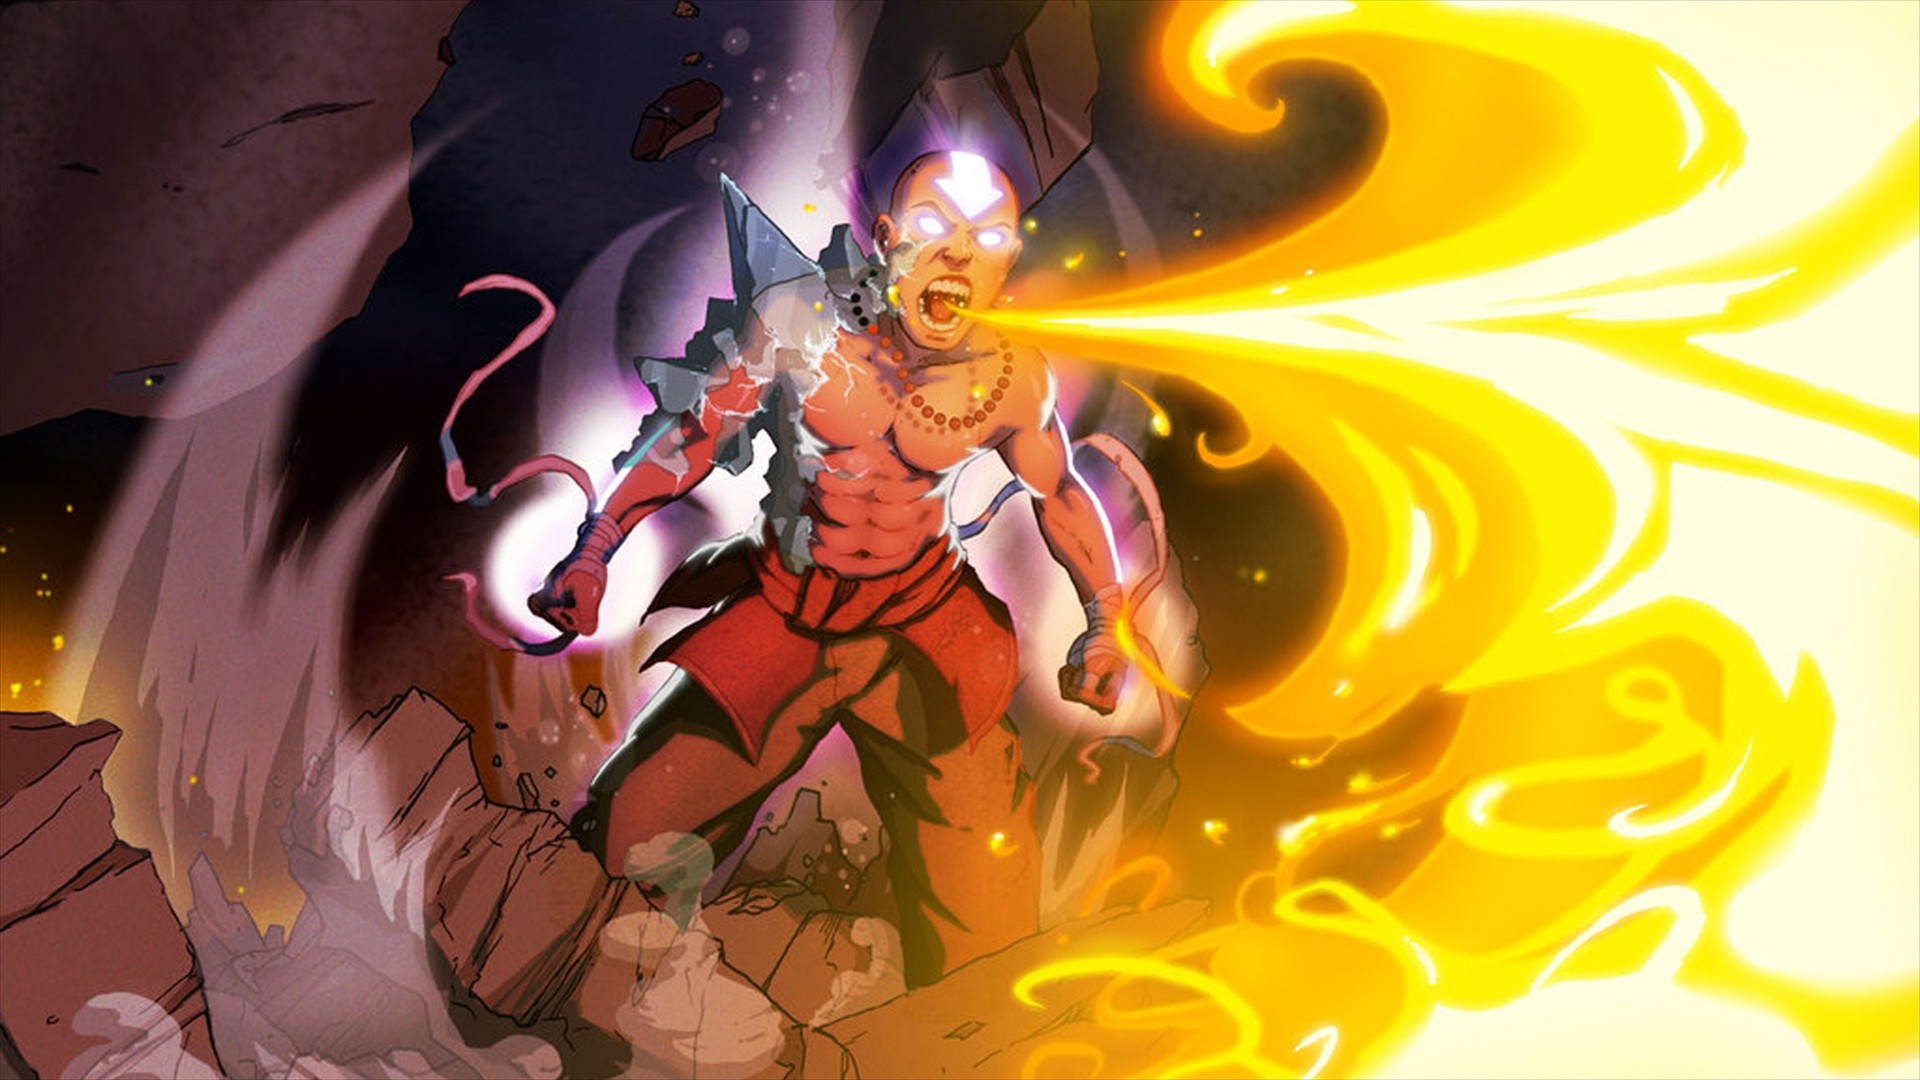 General 1920x1080 Avatar: The Last Airbender fire TV series cartoon fantasy art fantasy men